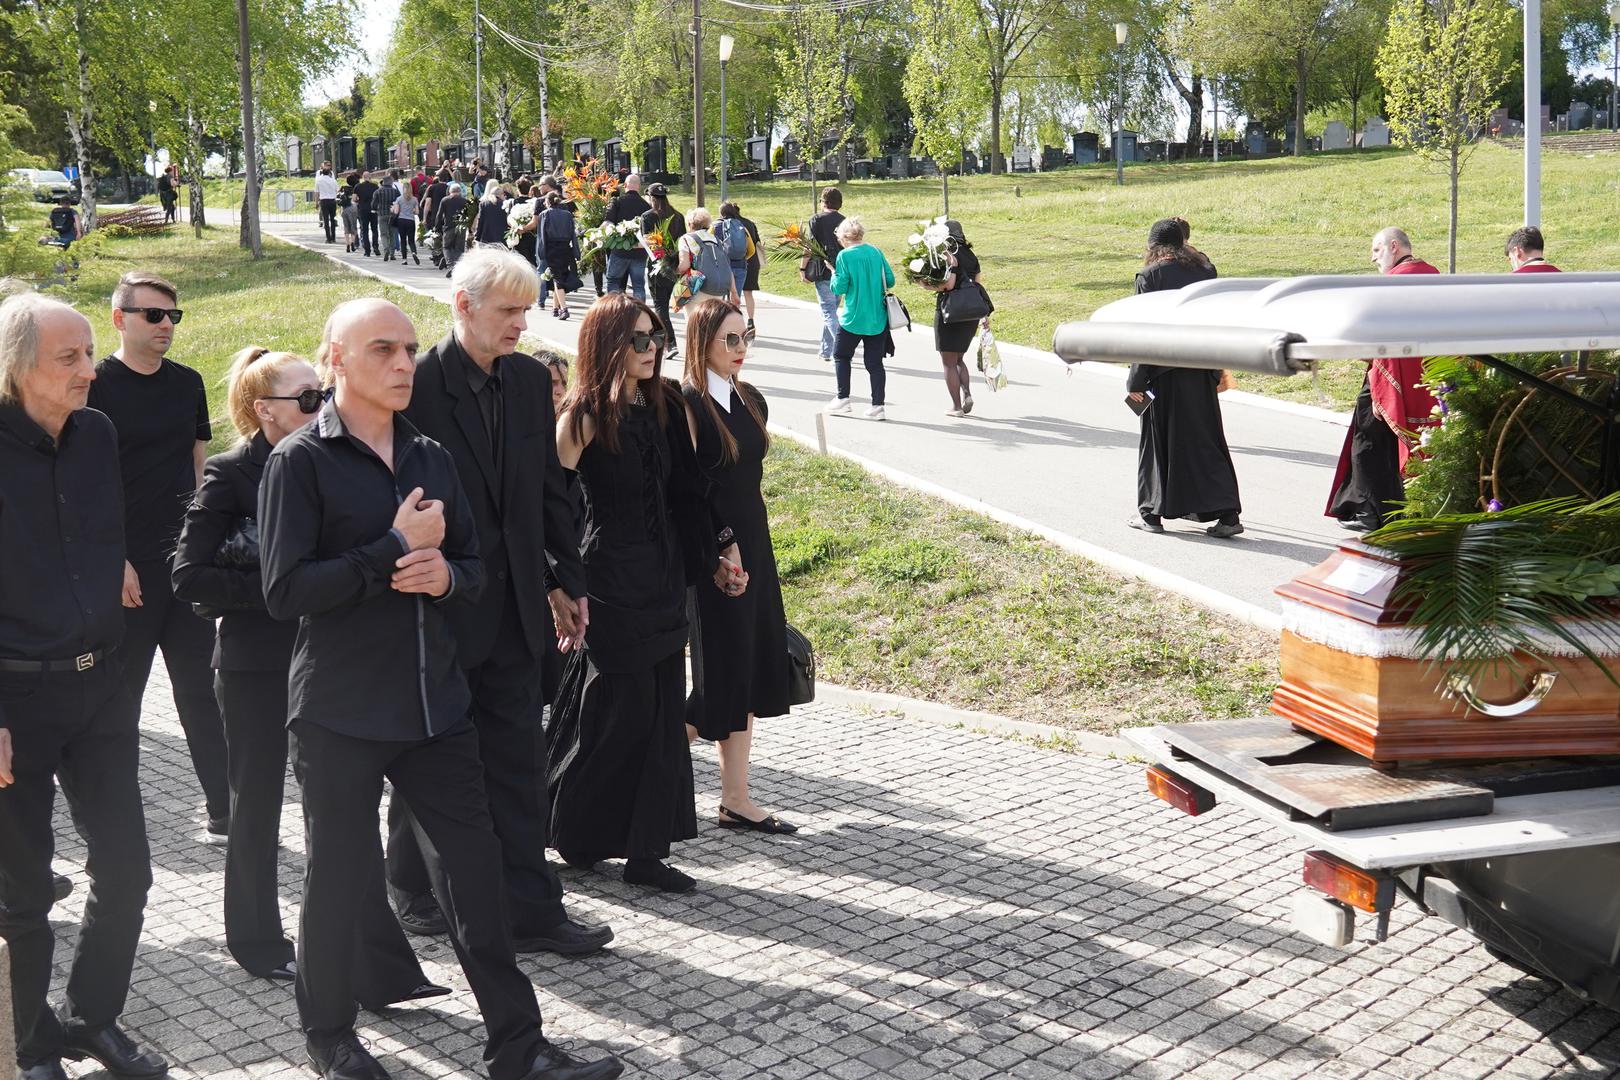 Uz legendarnog Dadu, na sahrani su bili prisutni i brat pjevačice, također glazbenik, Goran Milošević, kao i kolege Oliver Mandić, Momčilo Bajagić Bajaga te mnogi drugi, od članova najuže obitelji do suputnika na profesionalnom putu. 